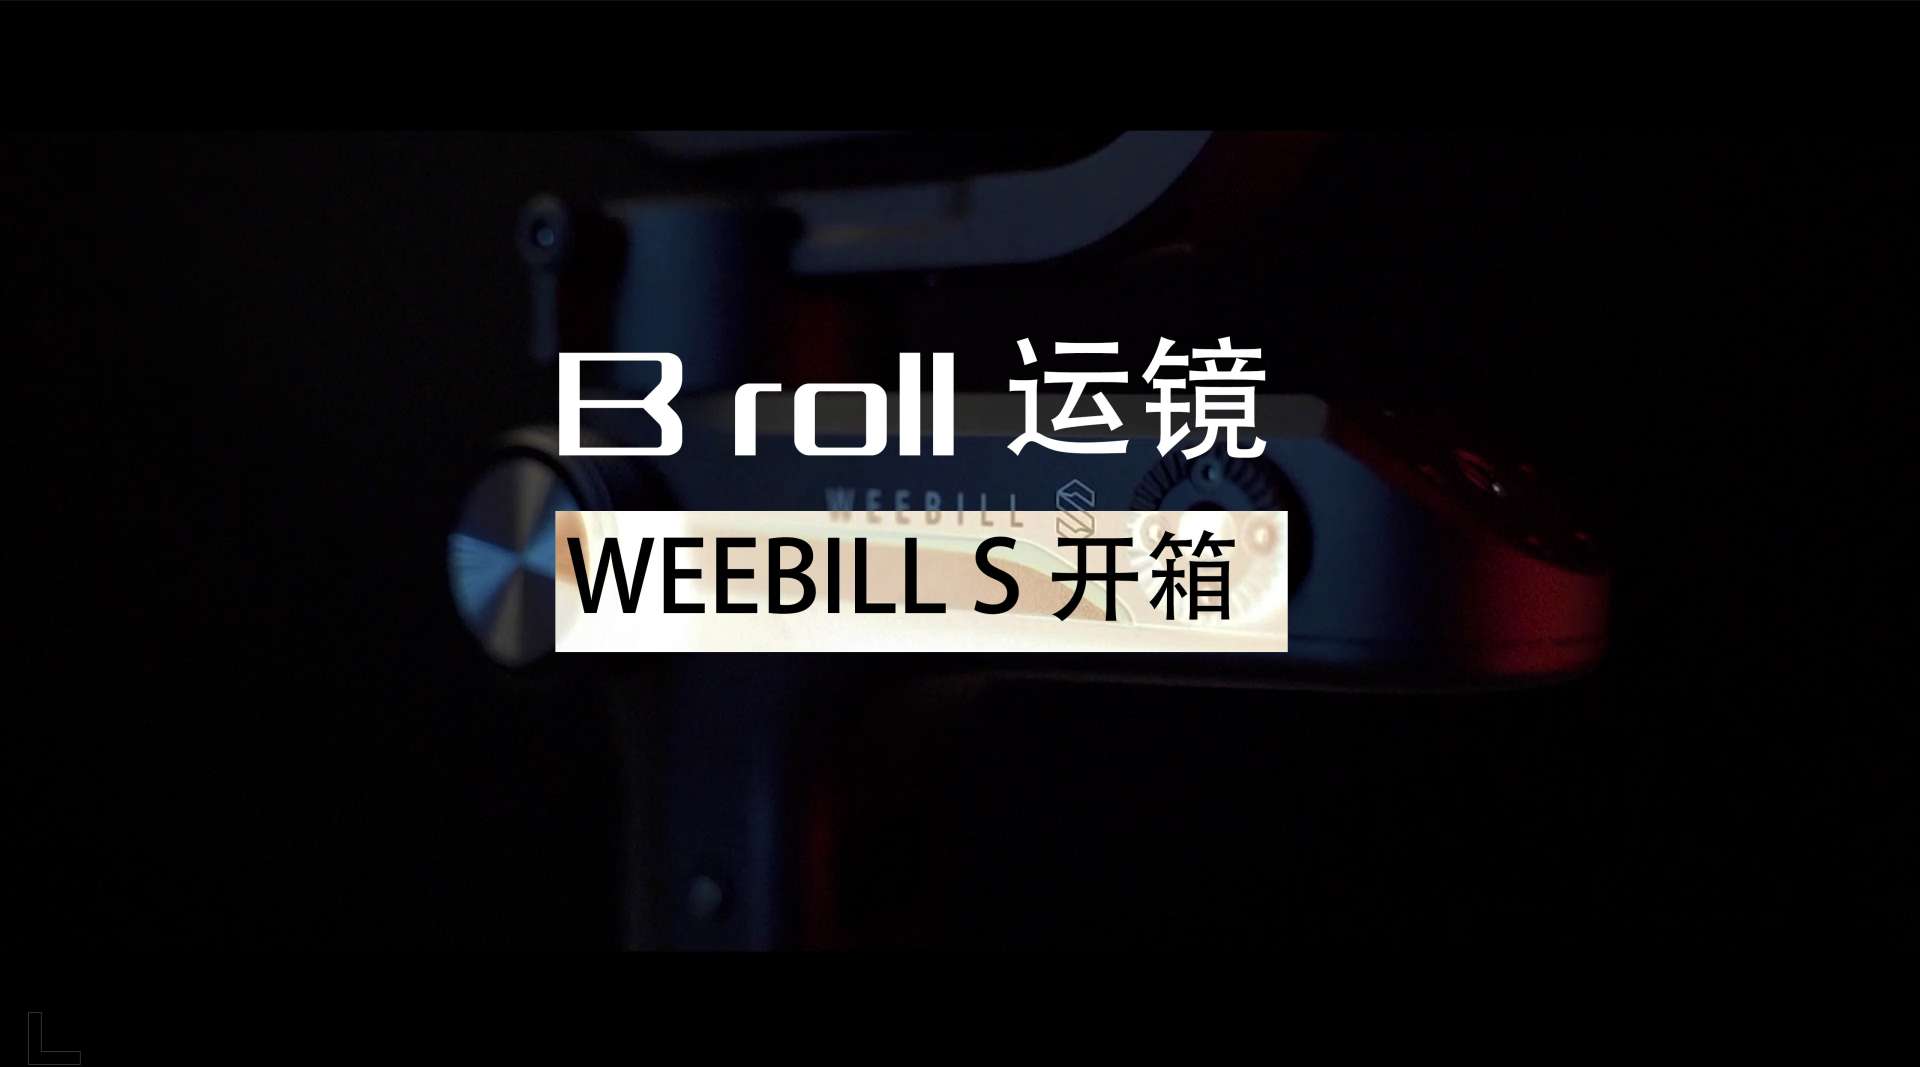 B roll运镜|  weebill s 开箱 #shot by Sony a73